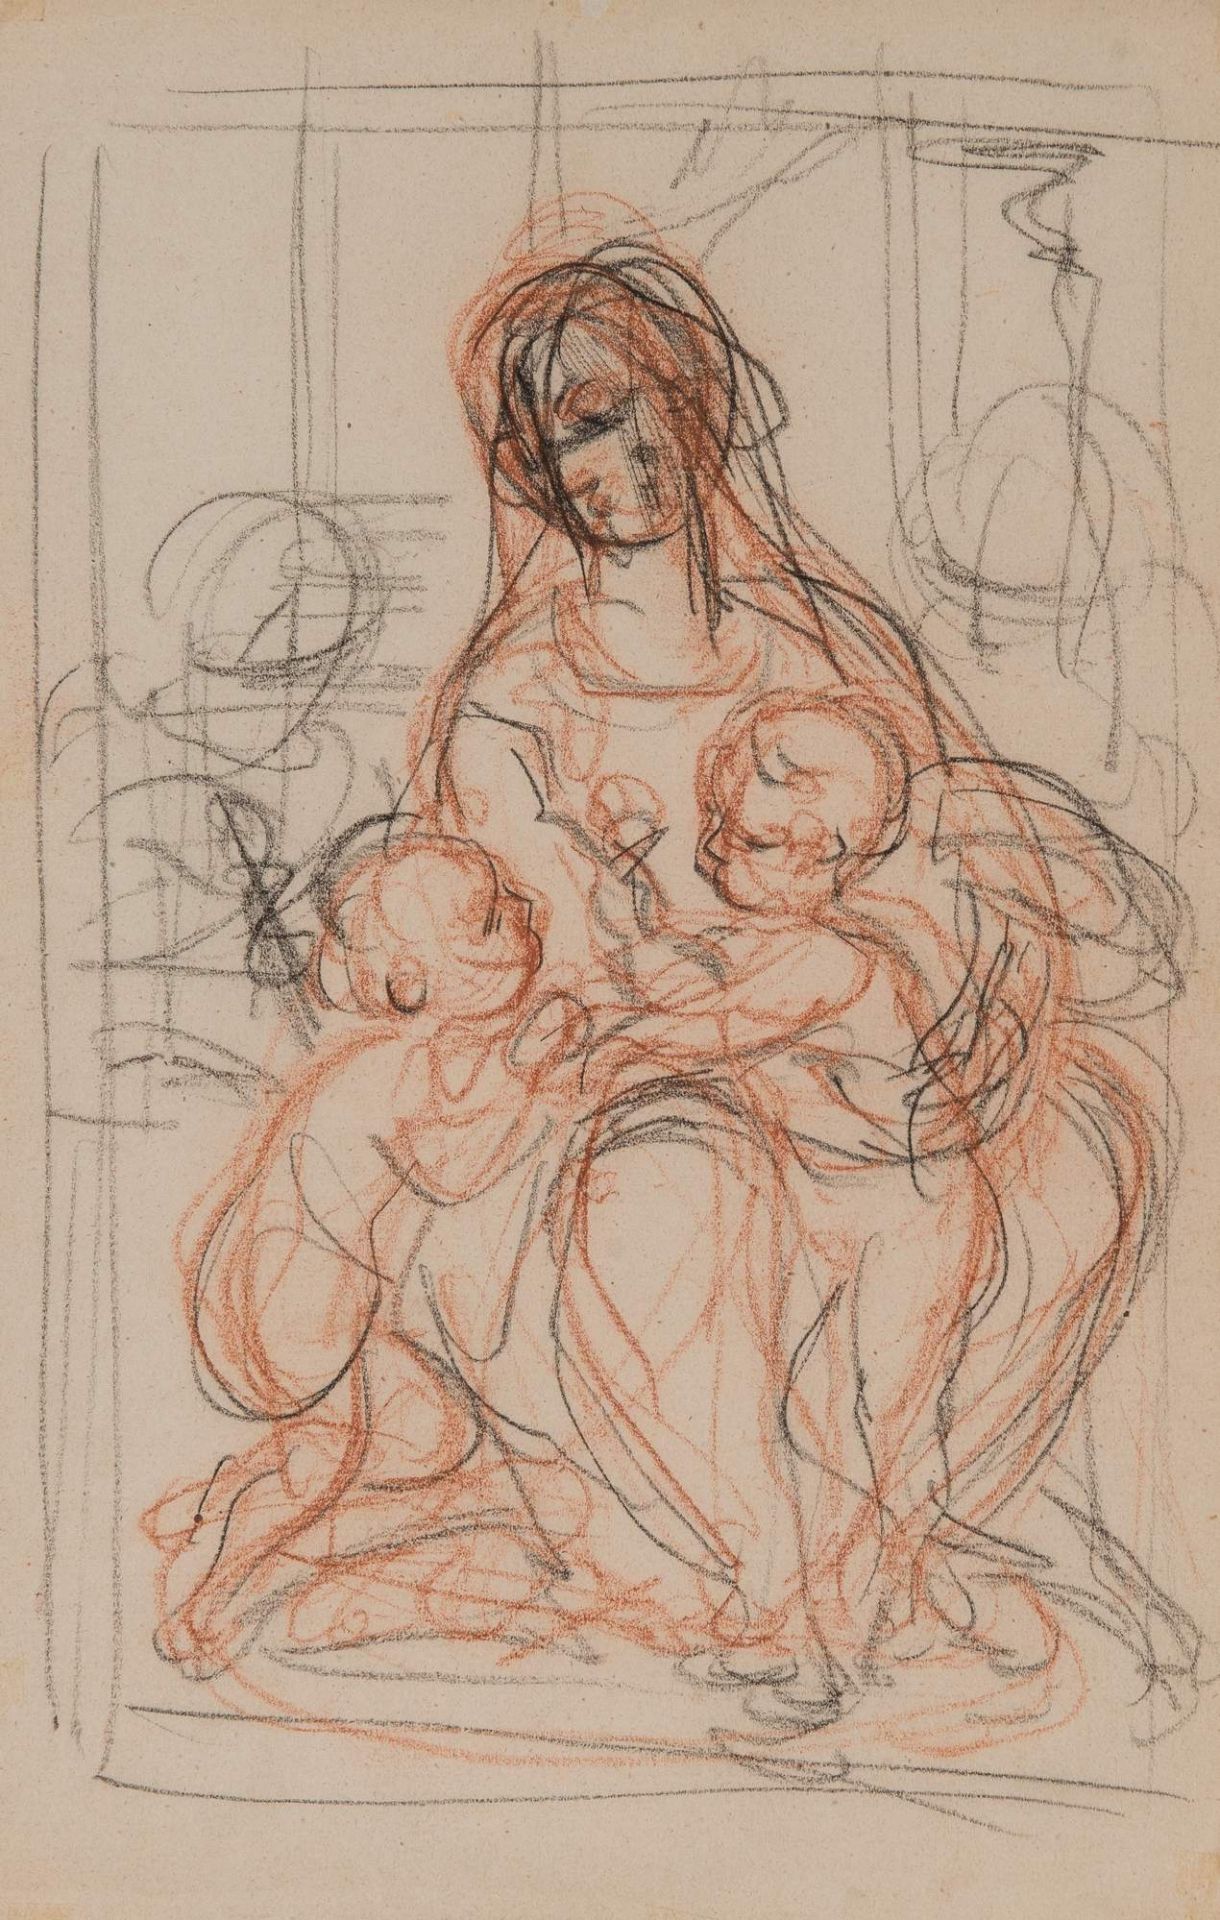 Anonimo bolognese dell’inizio del XVIII secolo. “Madonna col bambino e S. Giovannino”. Sanguigna e